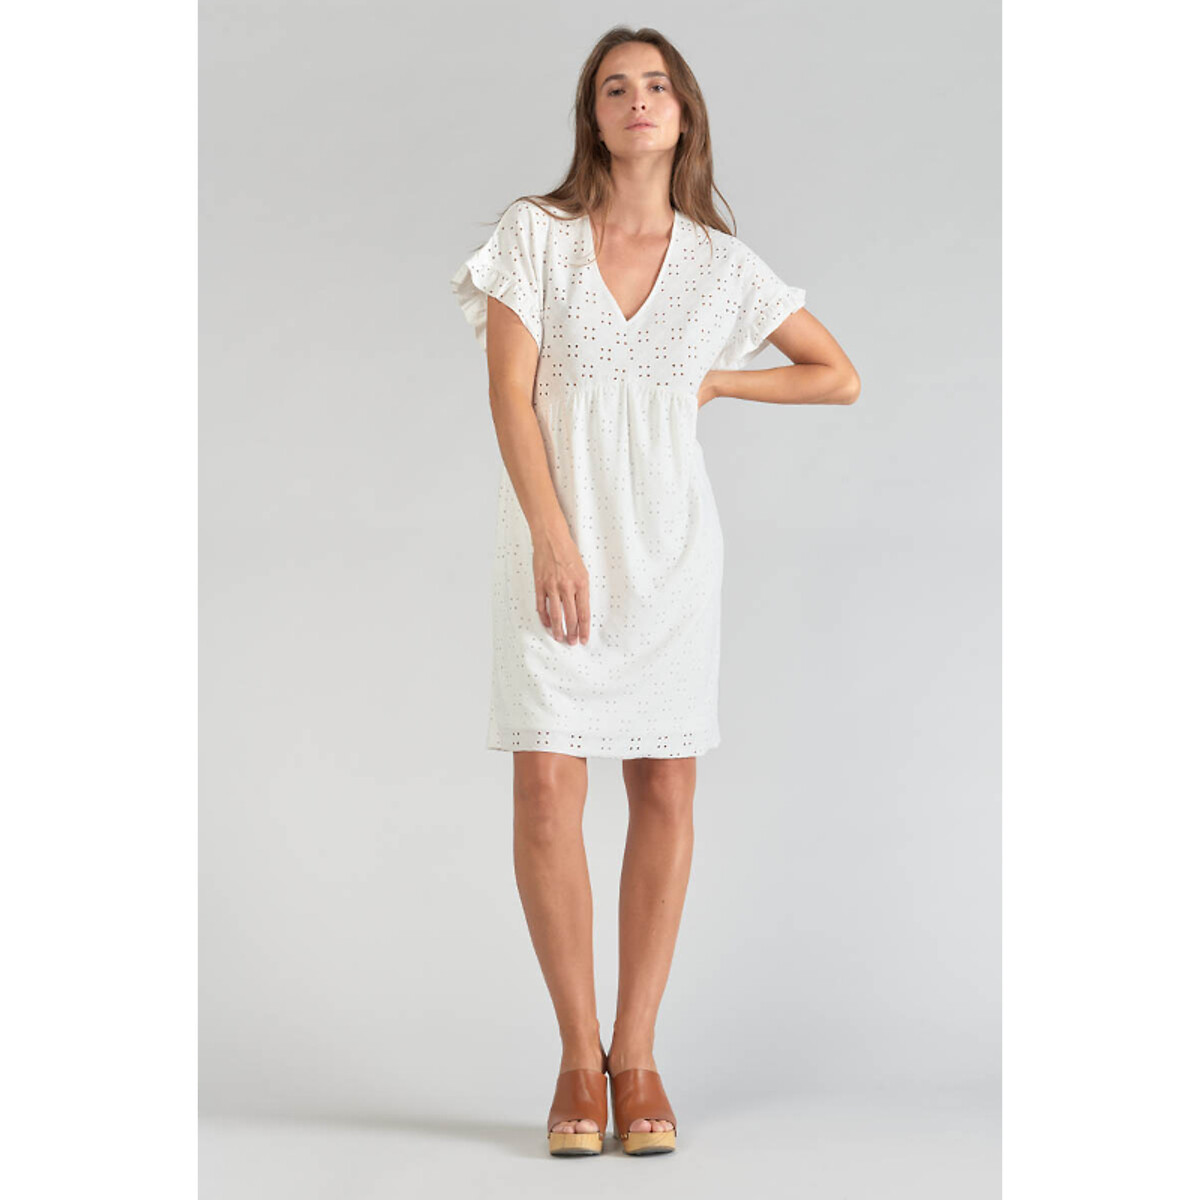 Платье короткое с вышивкой короткие рукава M белый платье с принтом короткое lancel короткие рукава 46 бежевый